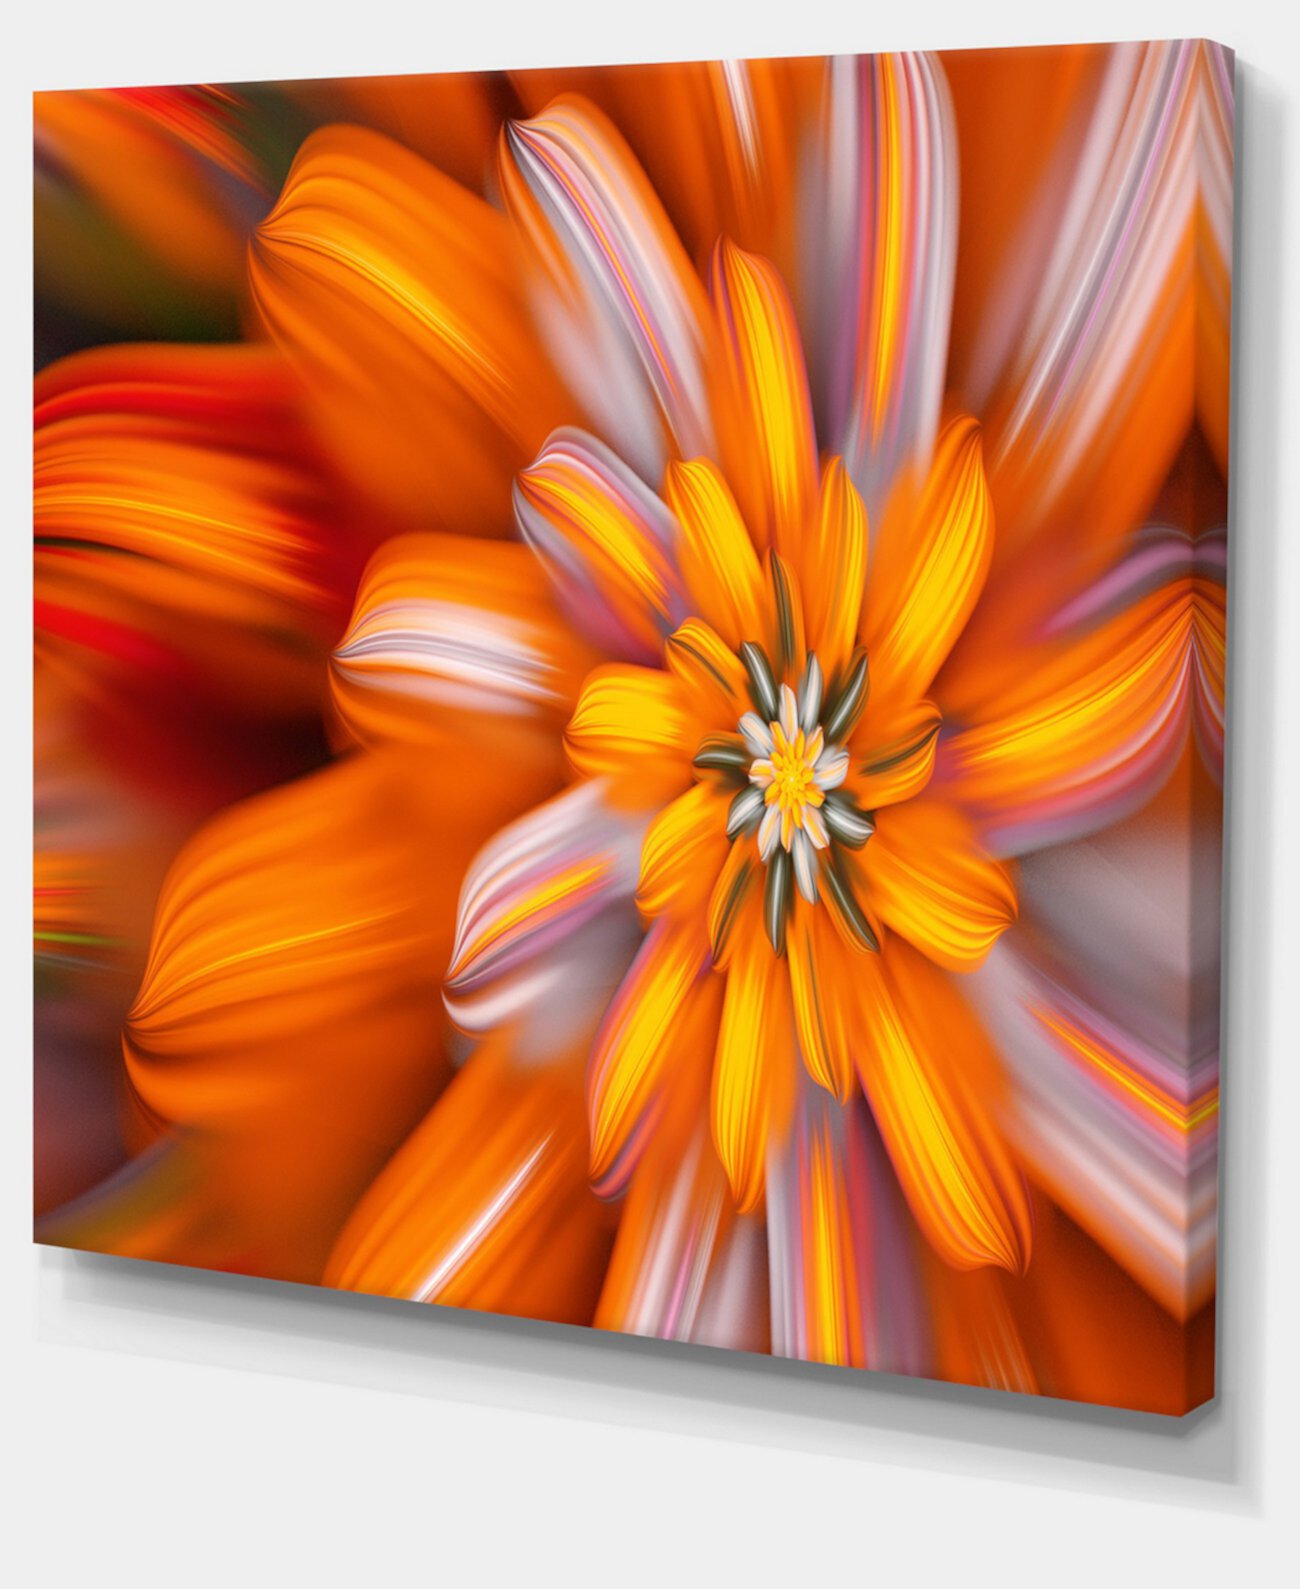 Художественный принт на холсте с цветочным рисунком «Массивный оранжевый фрактальный цветок» Designart - 20 "X 12" Design Art